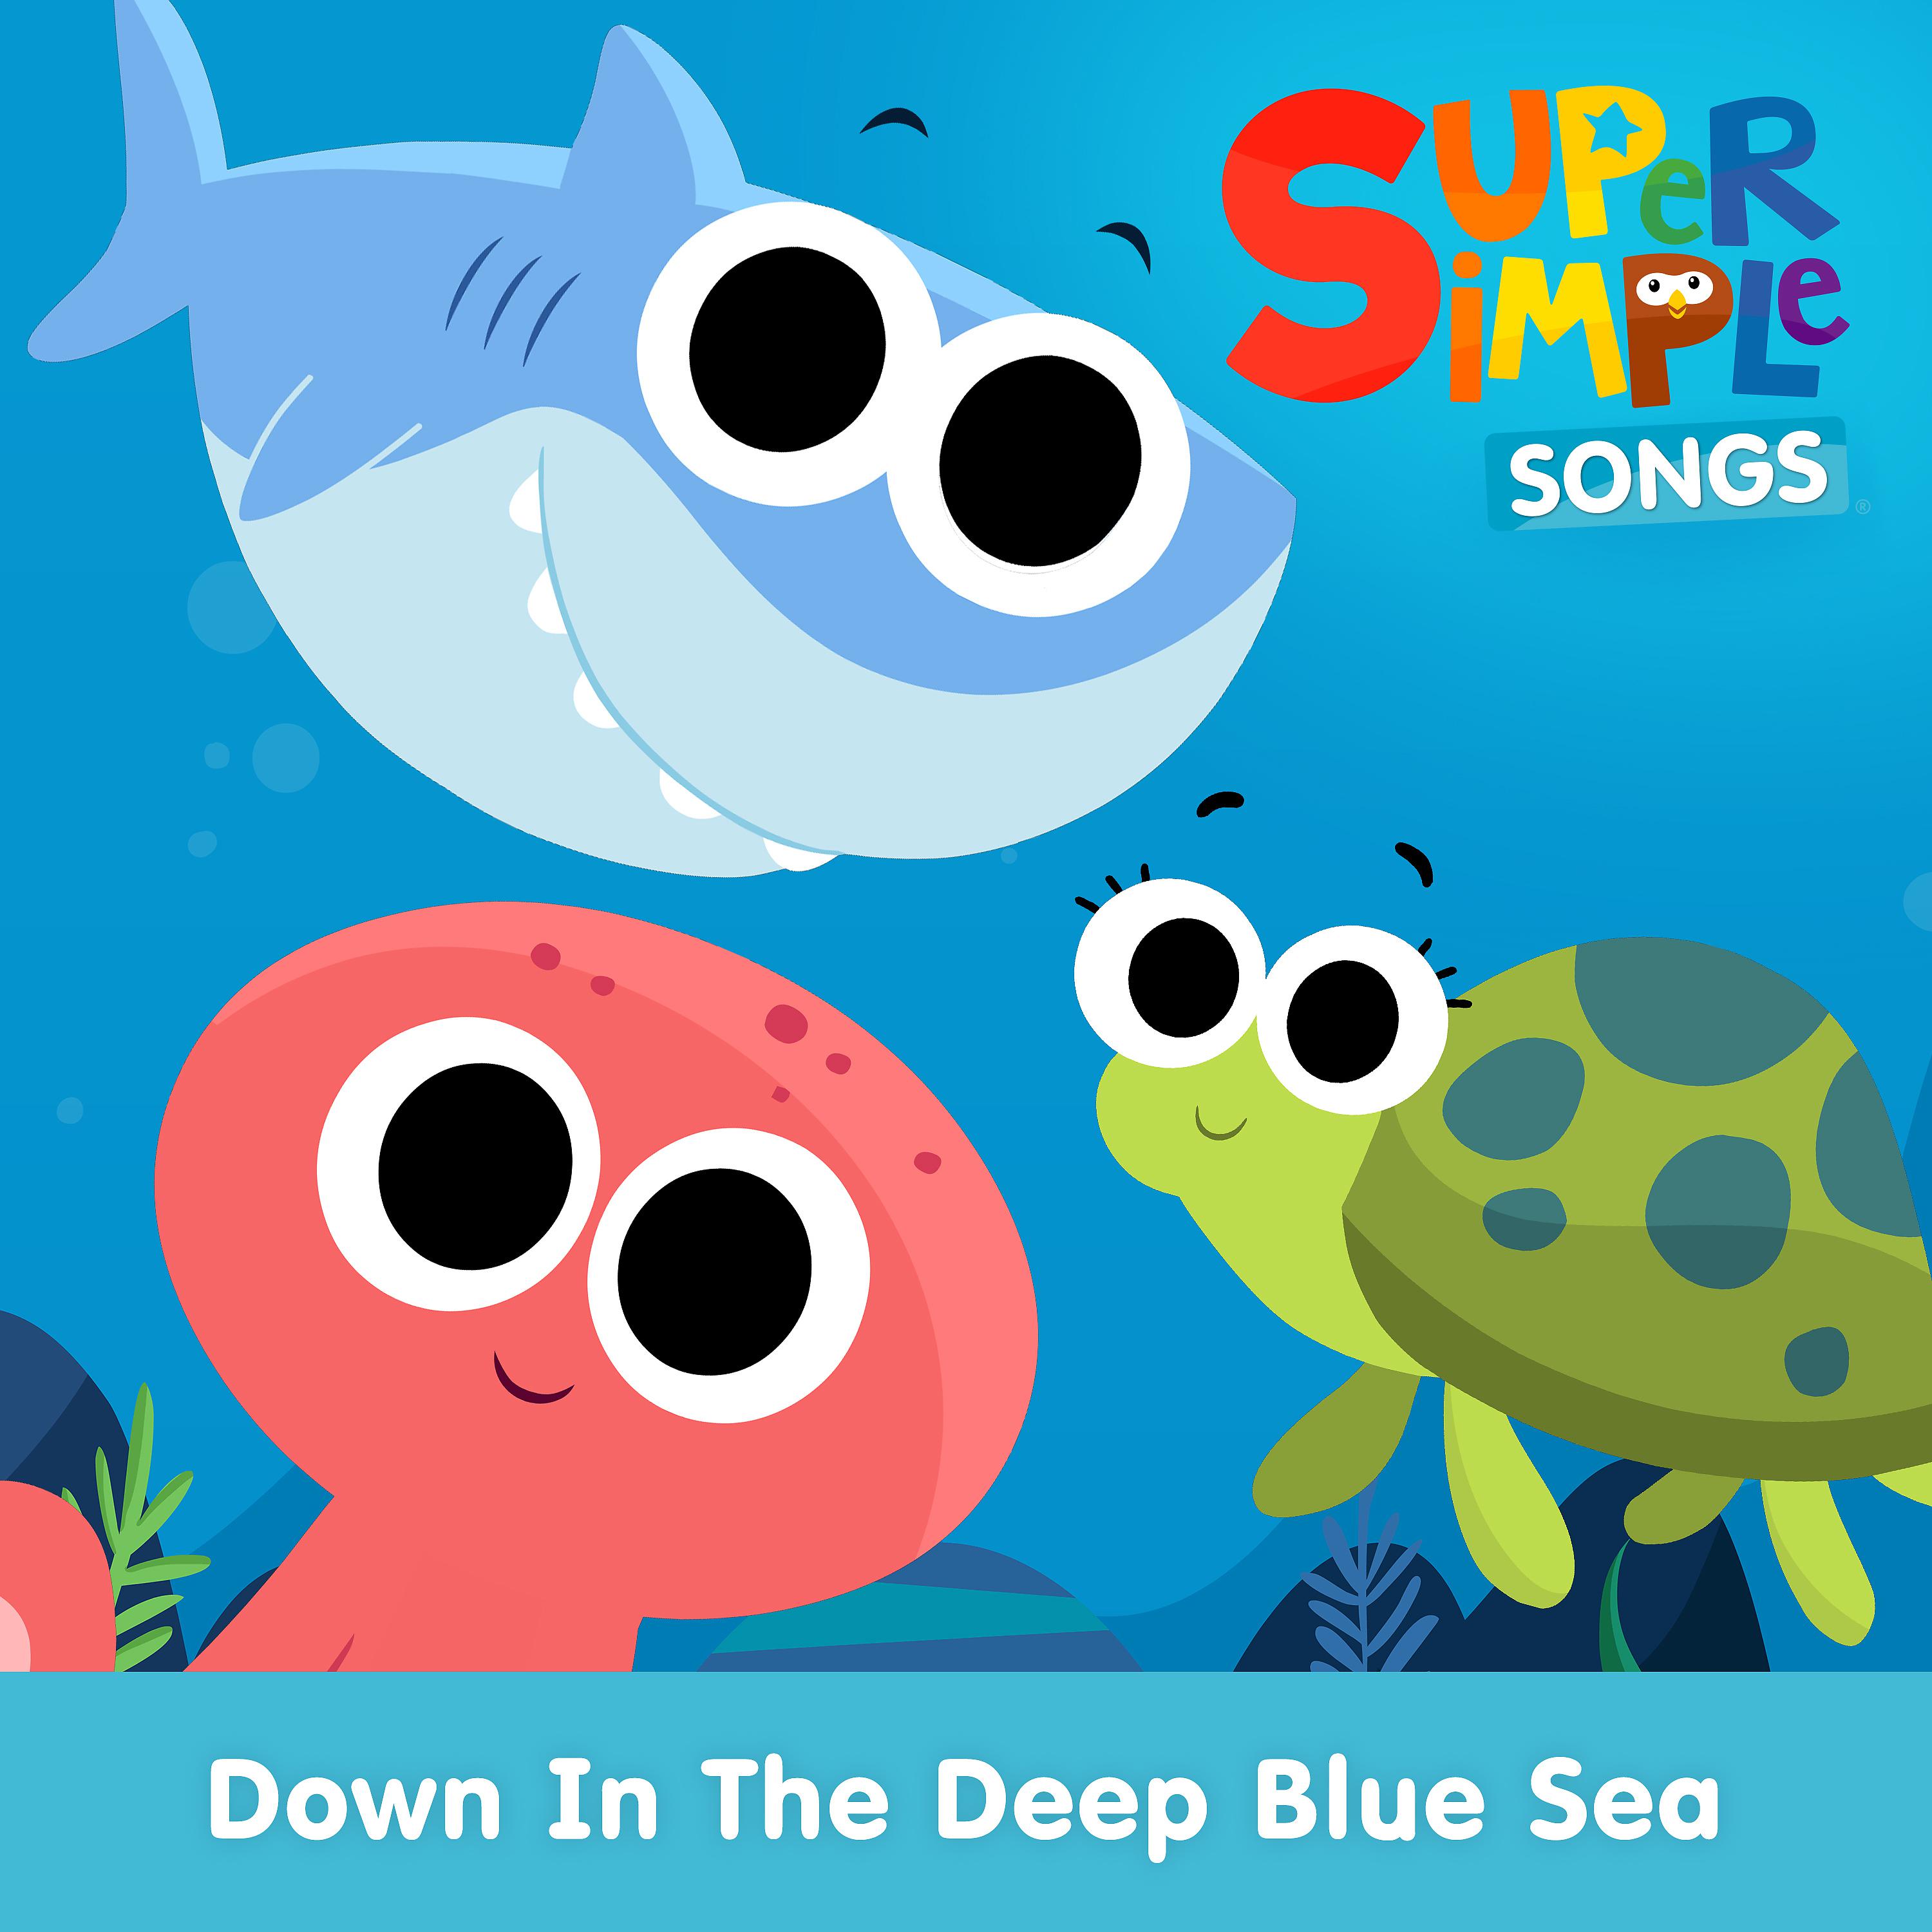 Simple Songs. Super simple Songs. Ten little Fishes super simple. A Sailor went to Sea super simple Songs.